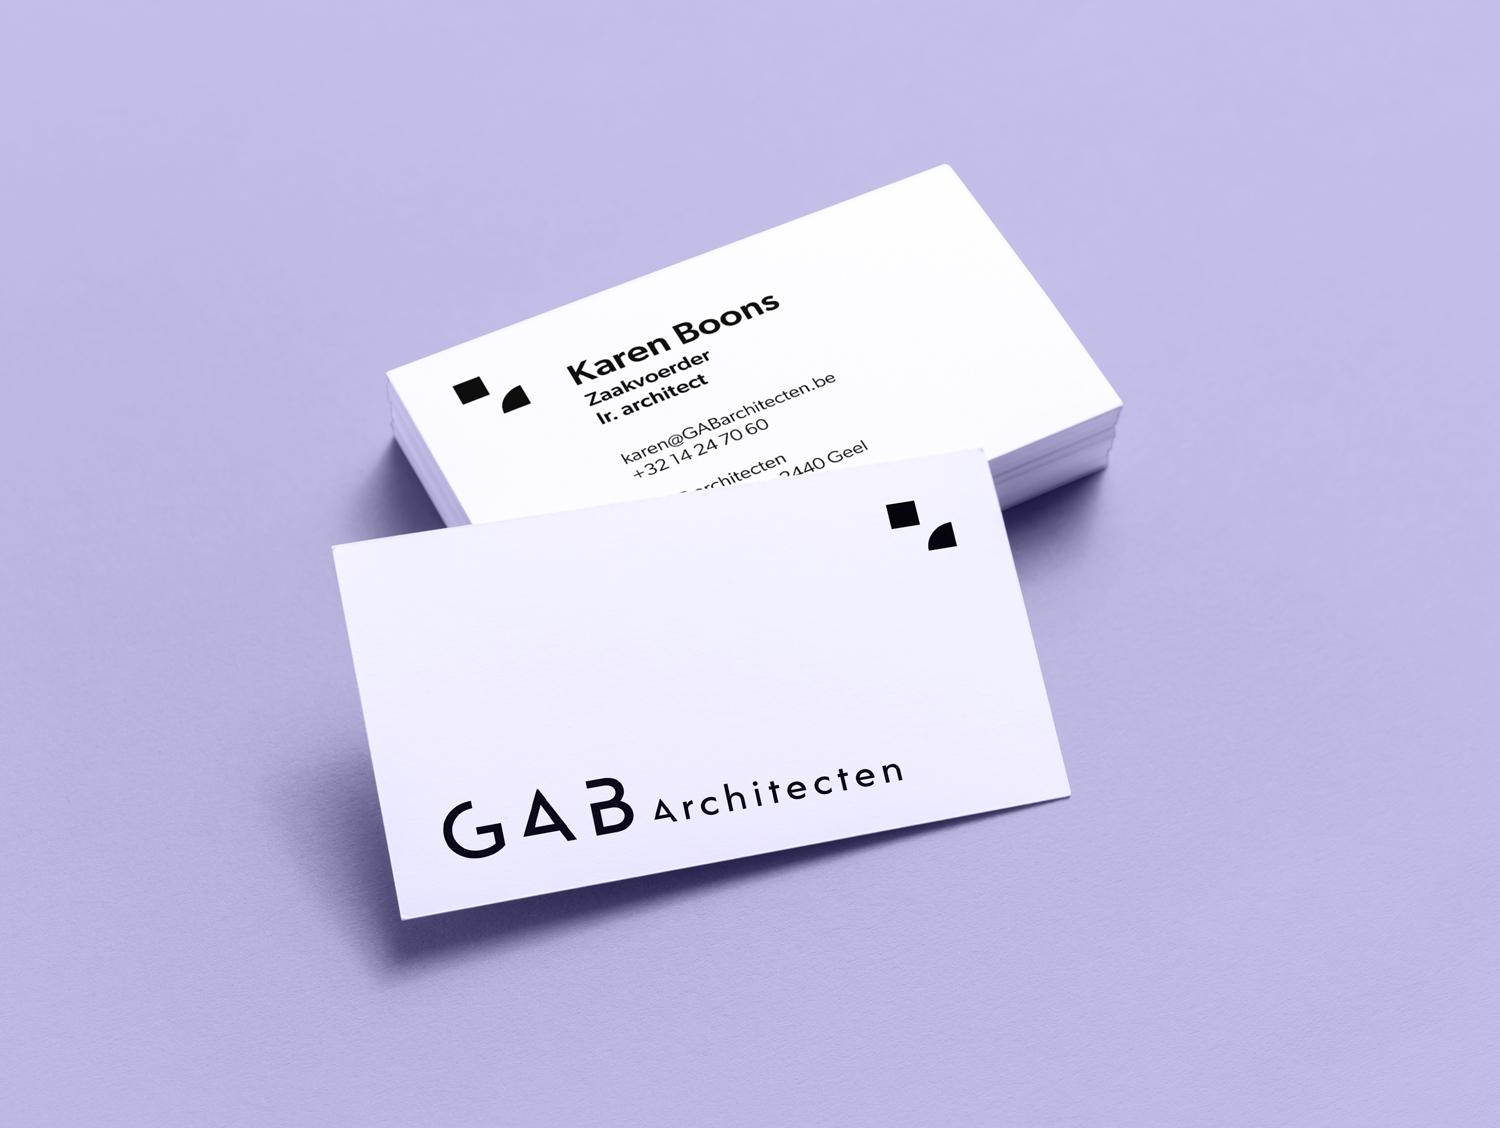 ontwerp naamkaartje GAB architecten door aroma communicatie